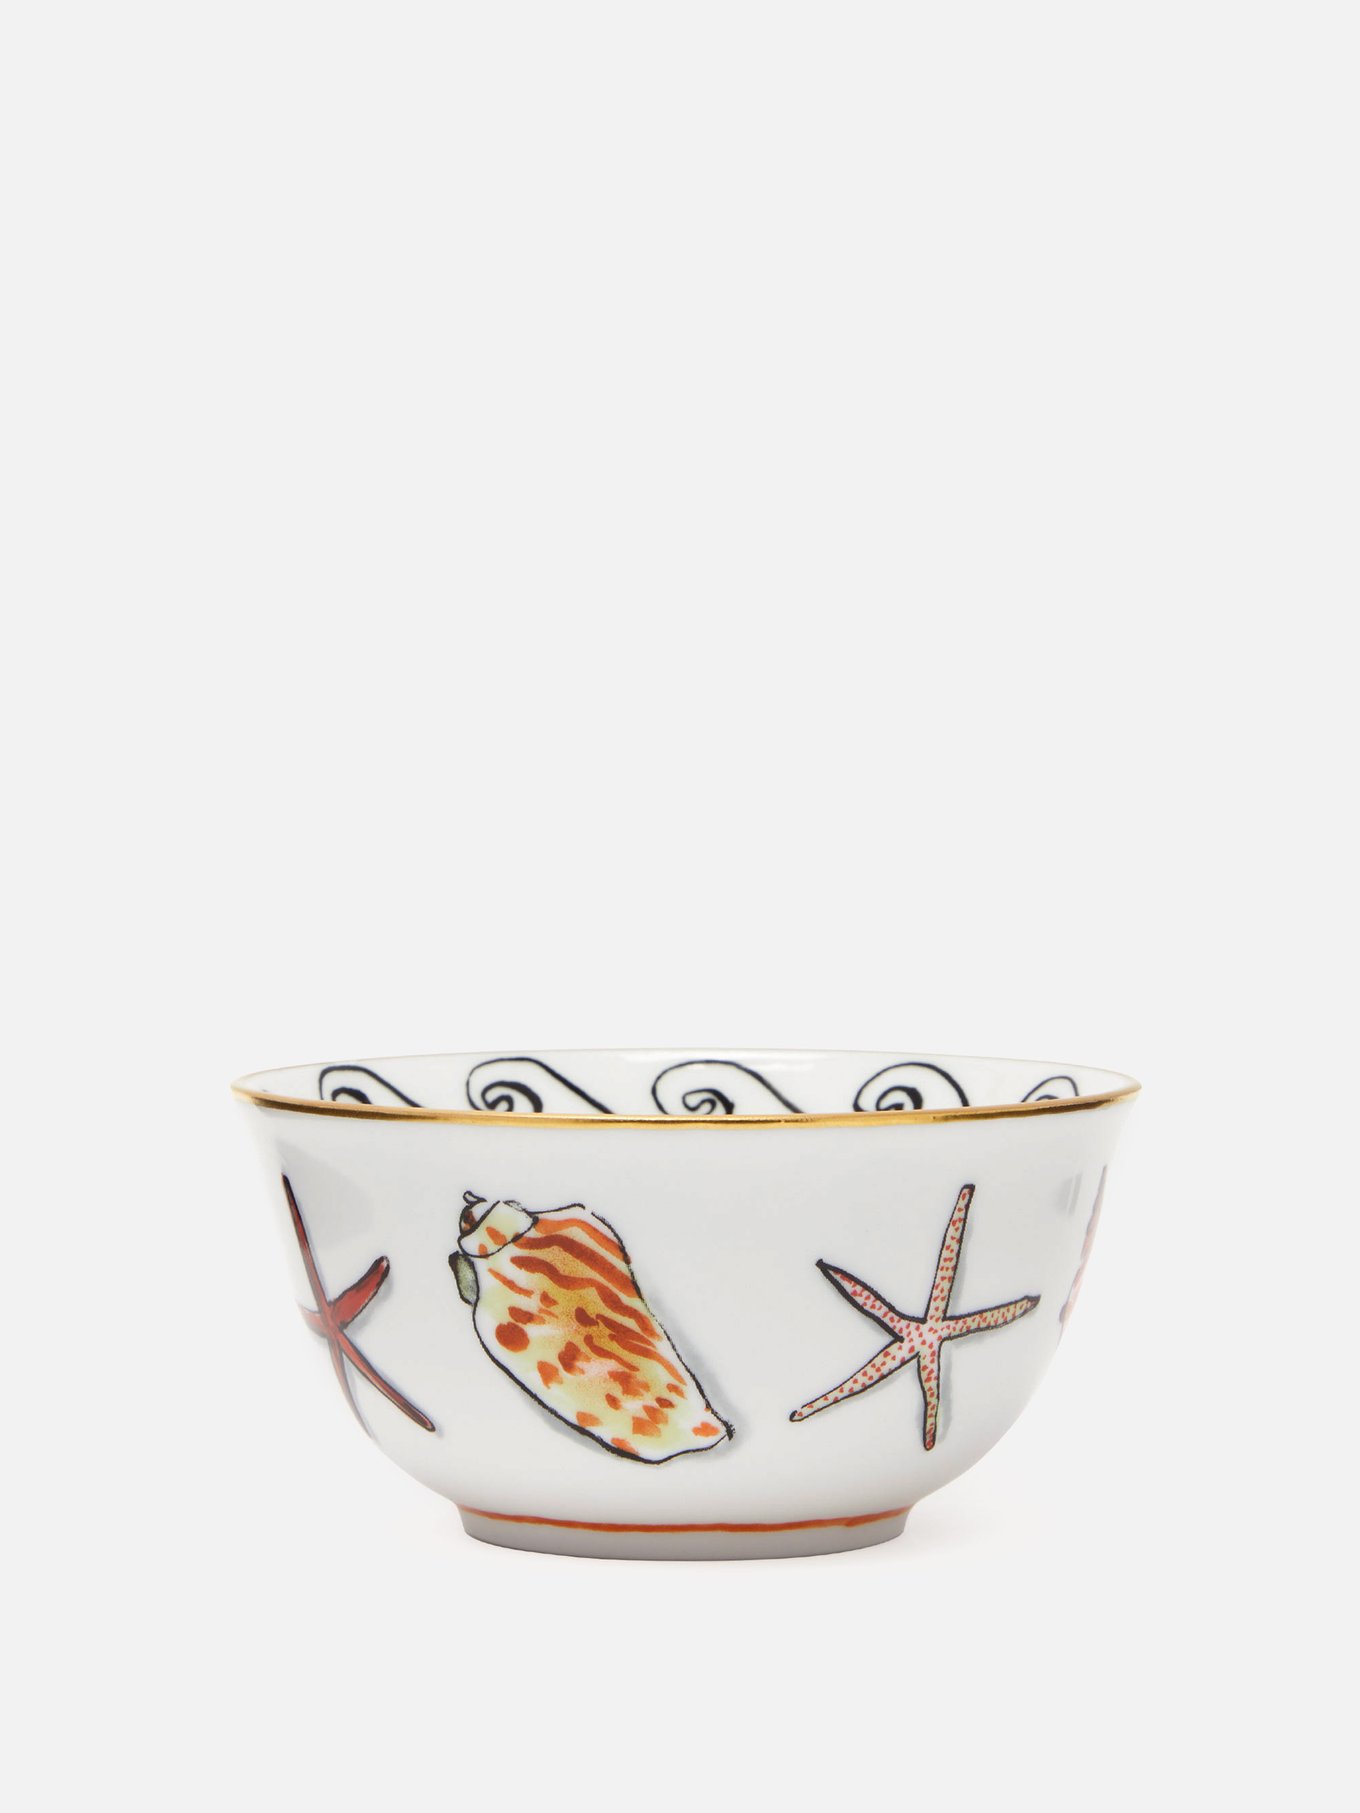 X Luke Edward Hall shell porcelain bowl | Ginori 1735